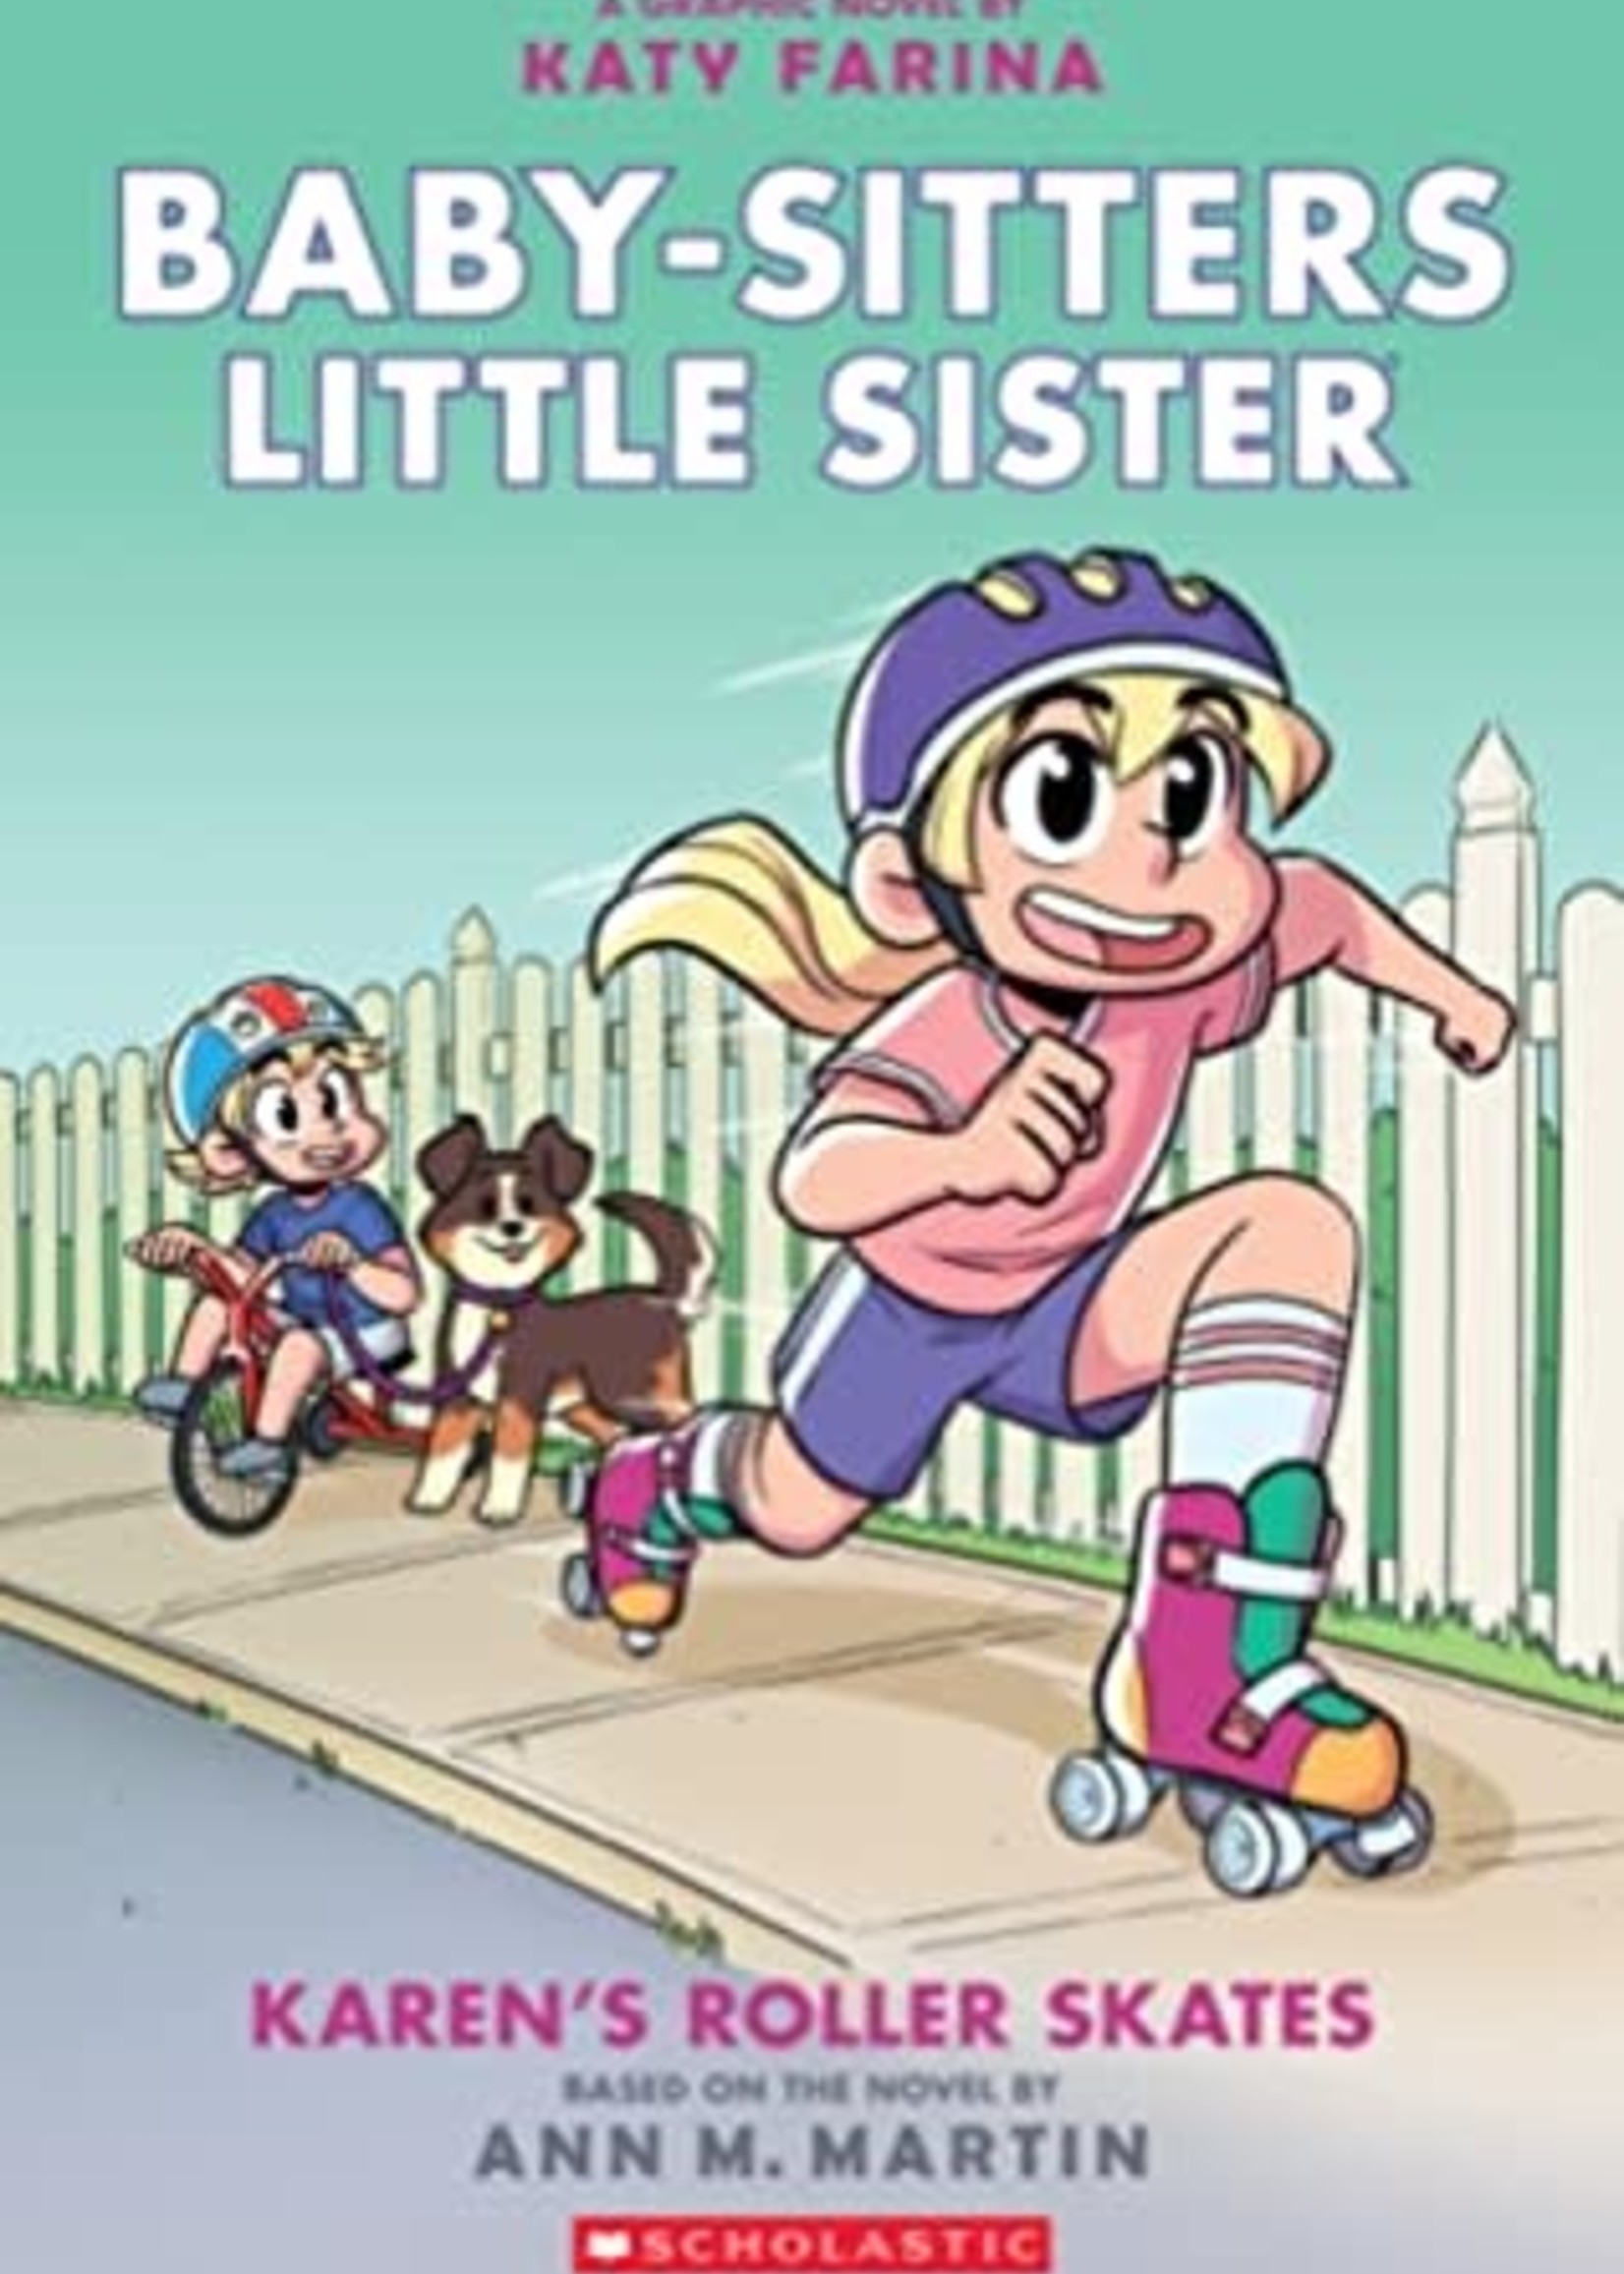 Karen's Roller Skates (Baby-Sitters Little Sister Graphic Novels #2) by Katy Farina, Ann M. Martin